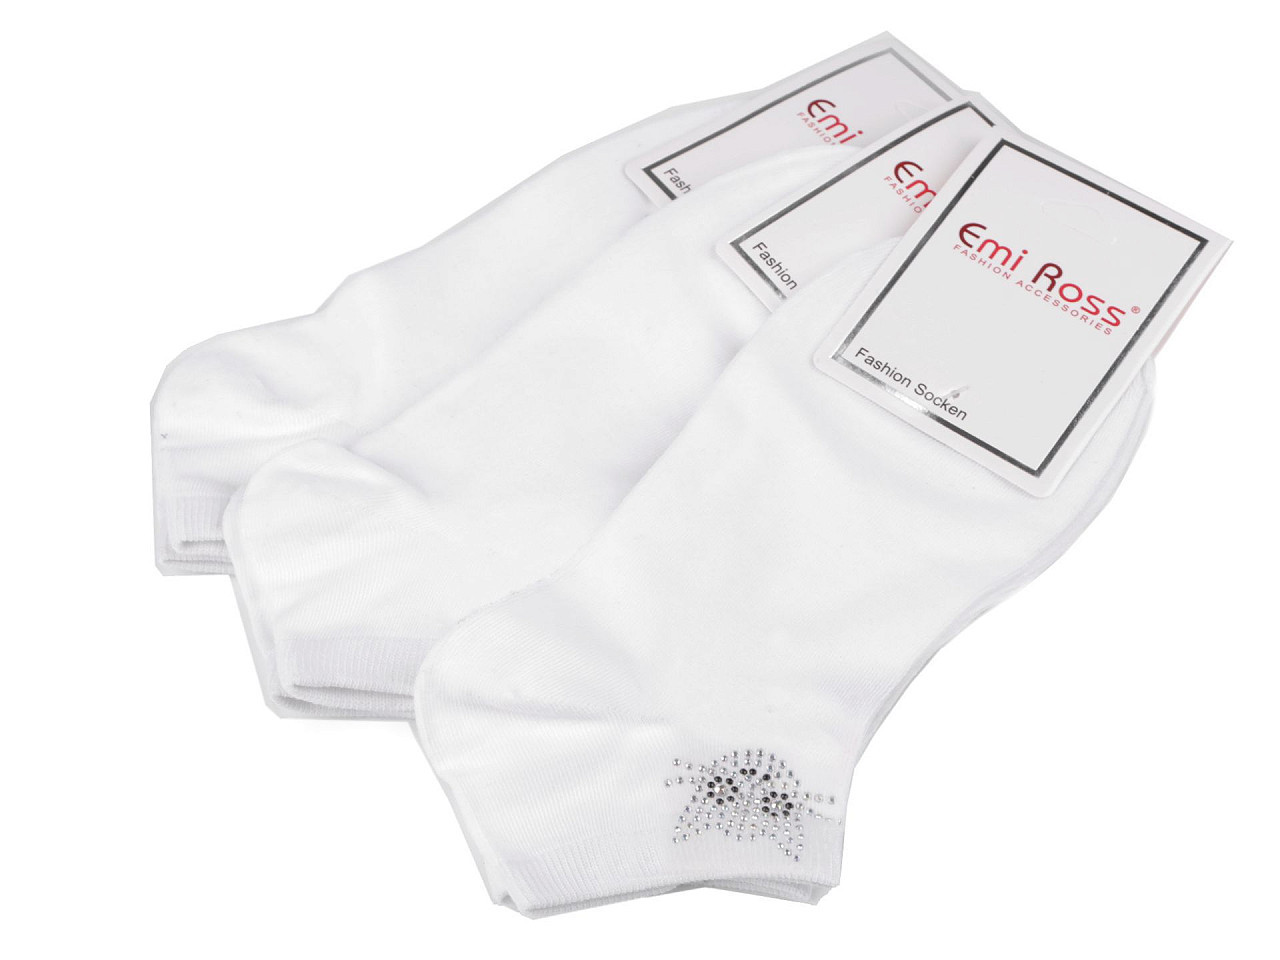 Dámské bavlněné ponožky kotníkové s kamínky Emi Ross, barva 60 (39-42) bílá